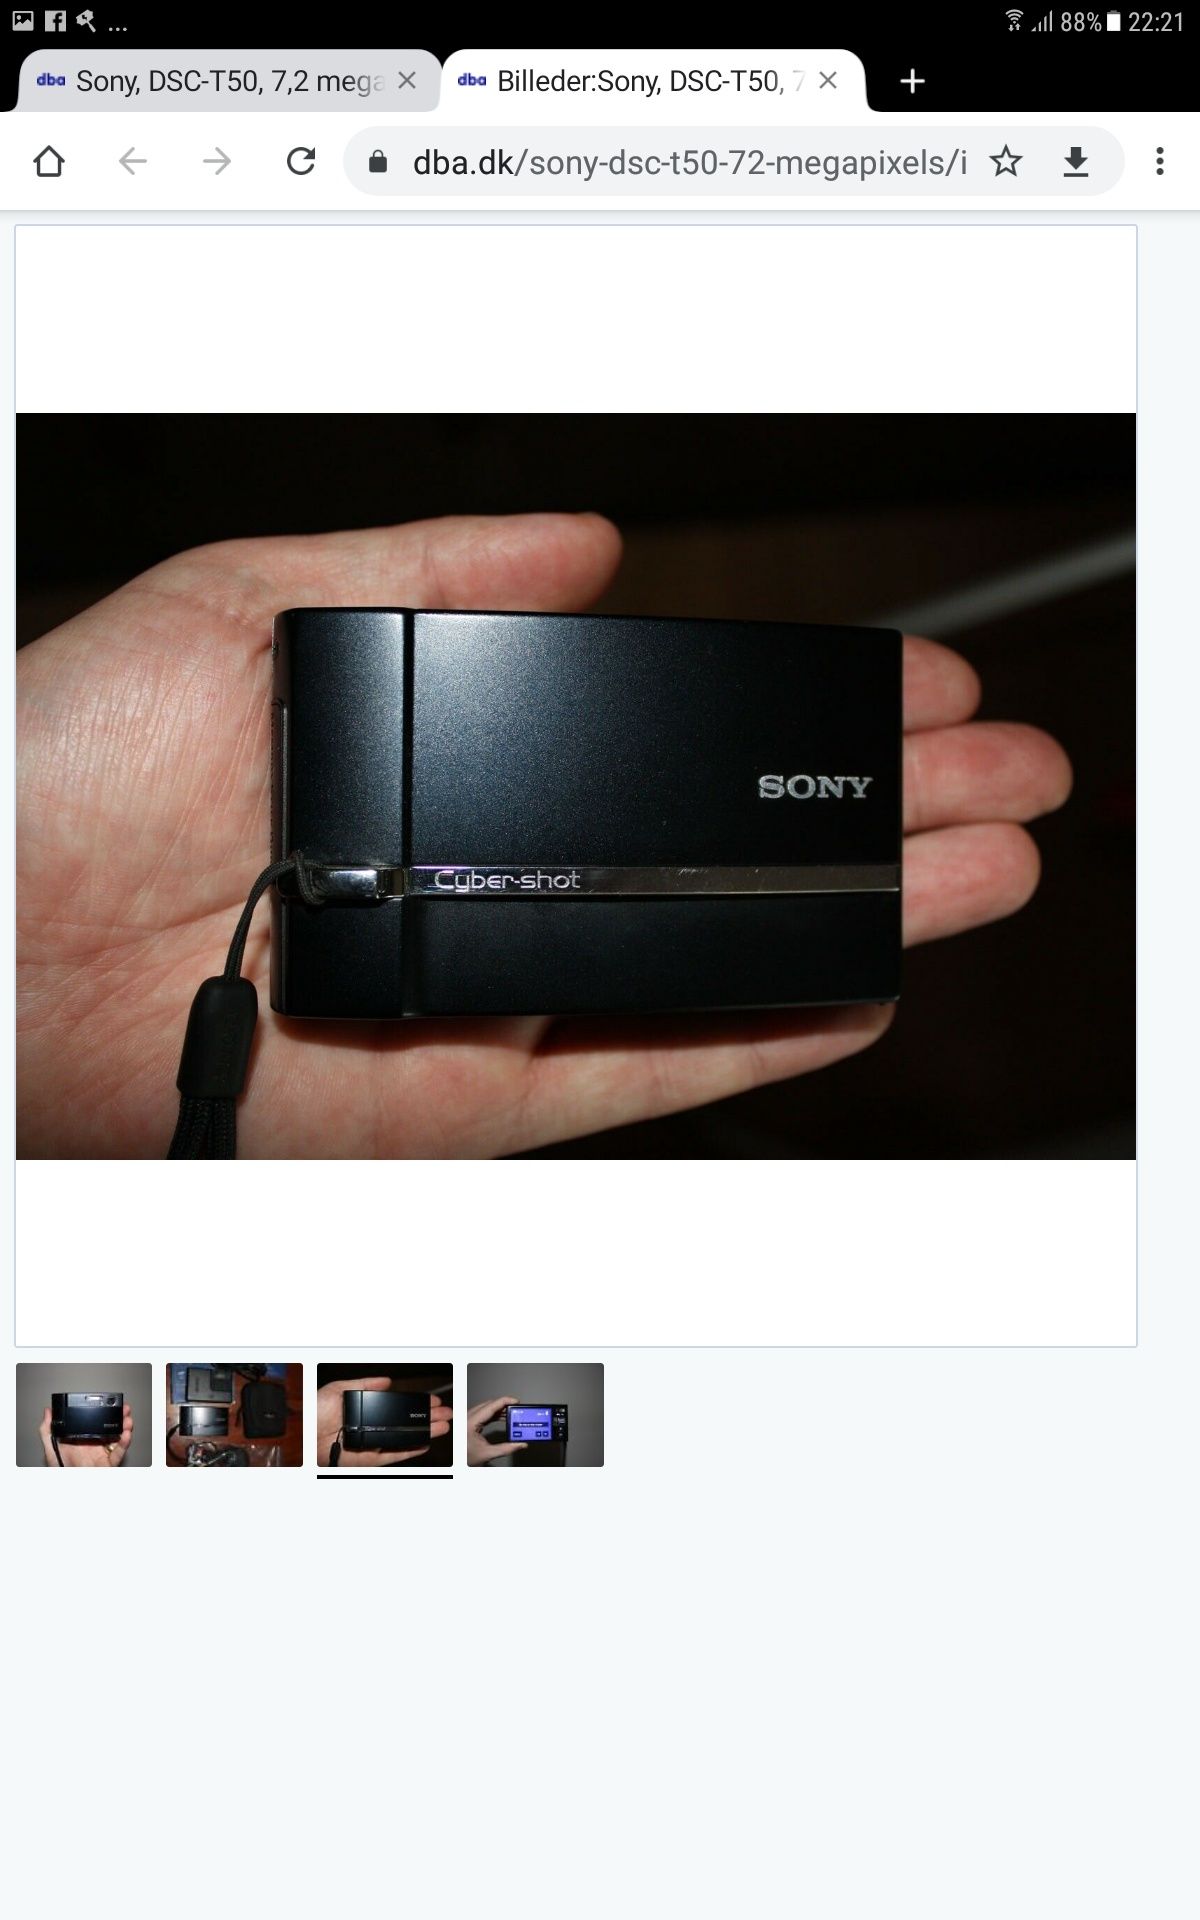 Sony Cyber-shot DSC-T50 7.2Mpx